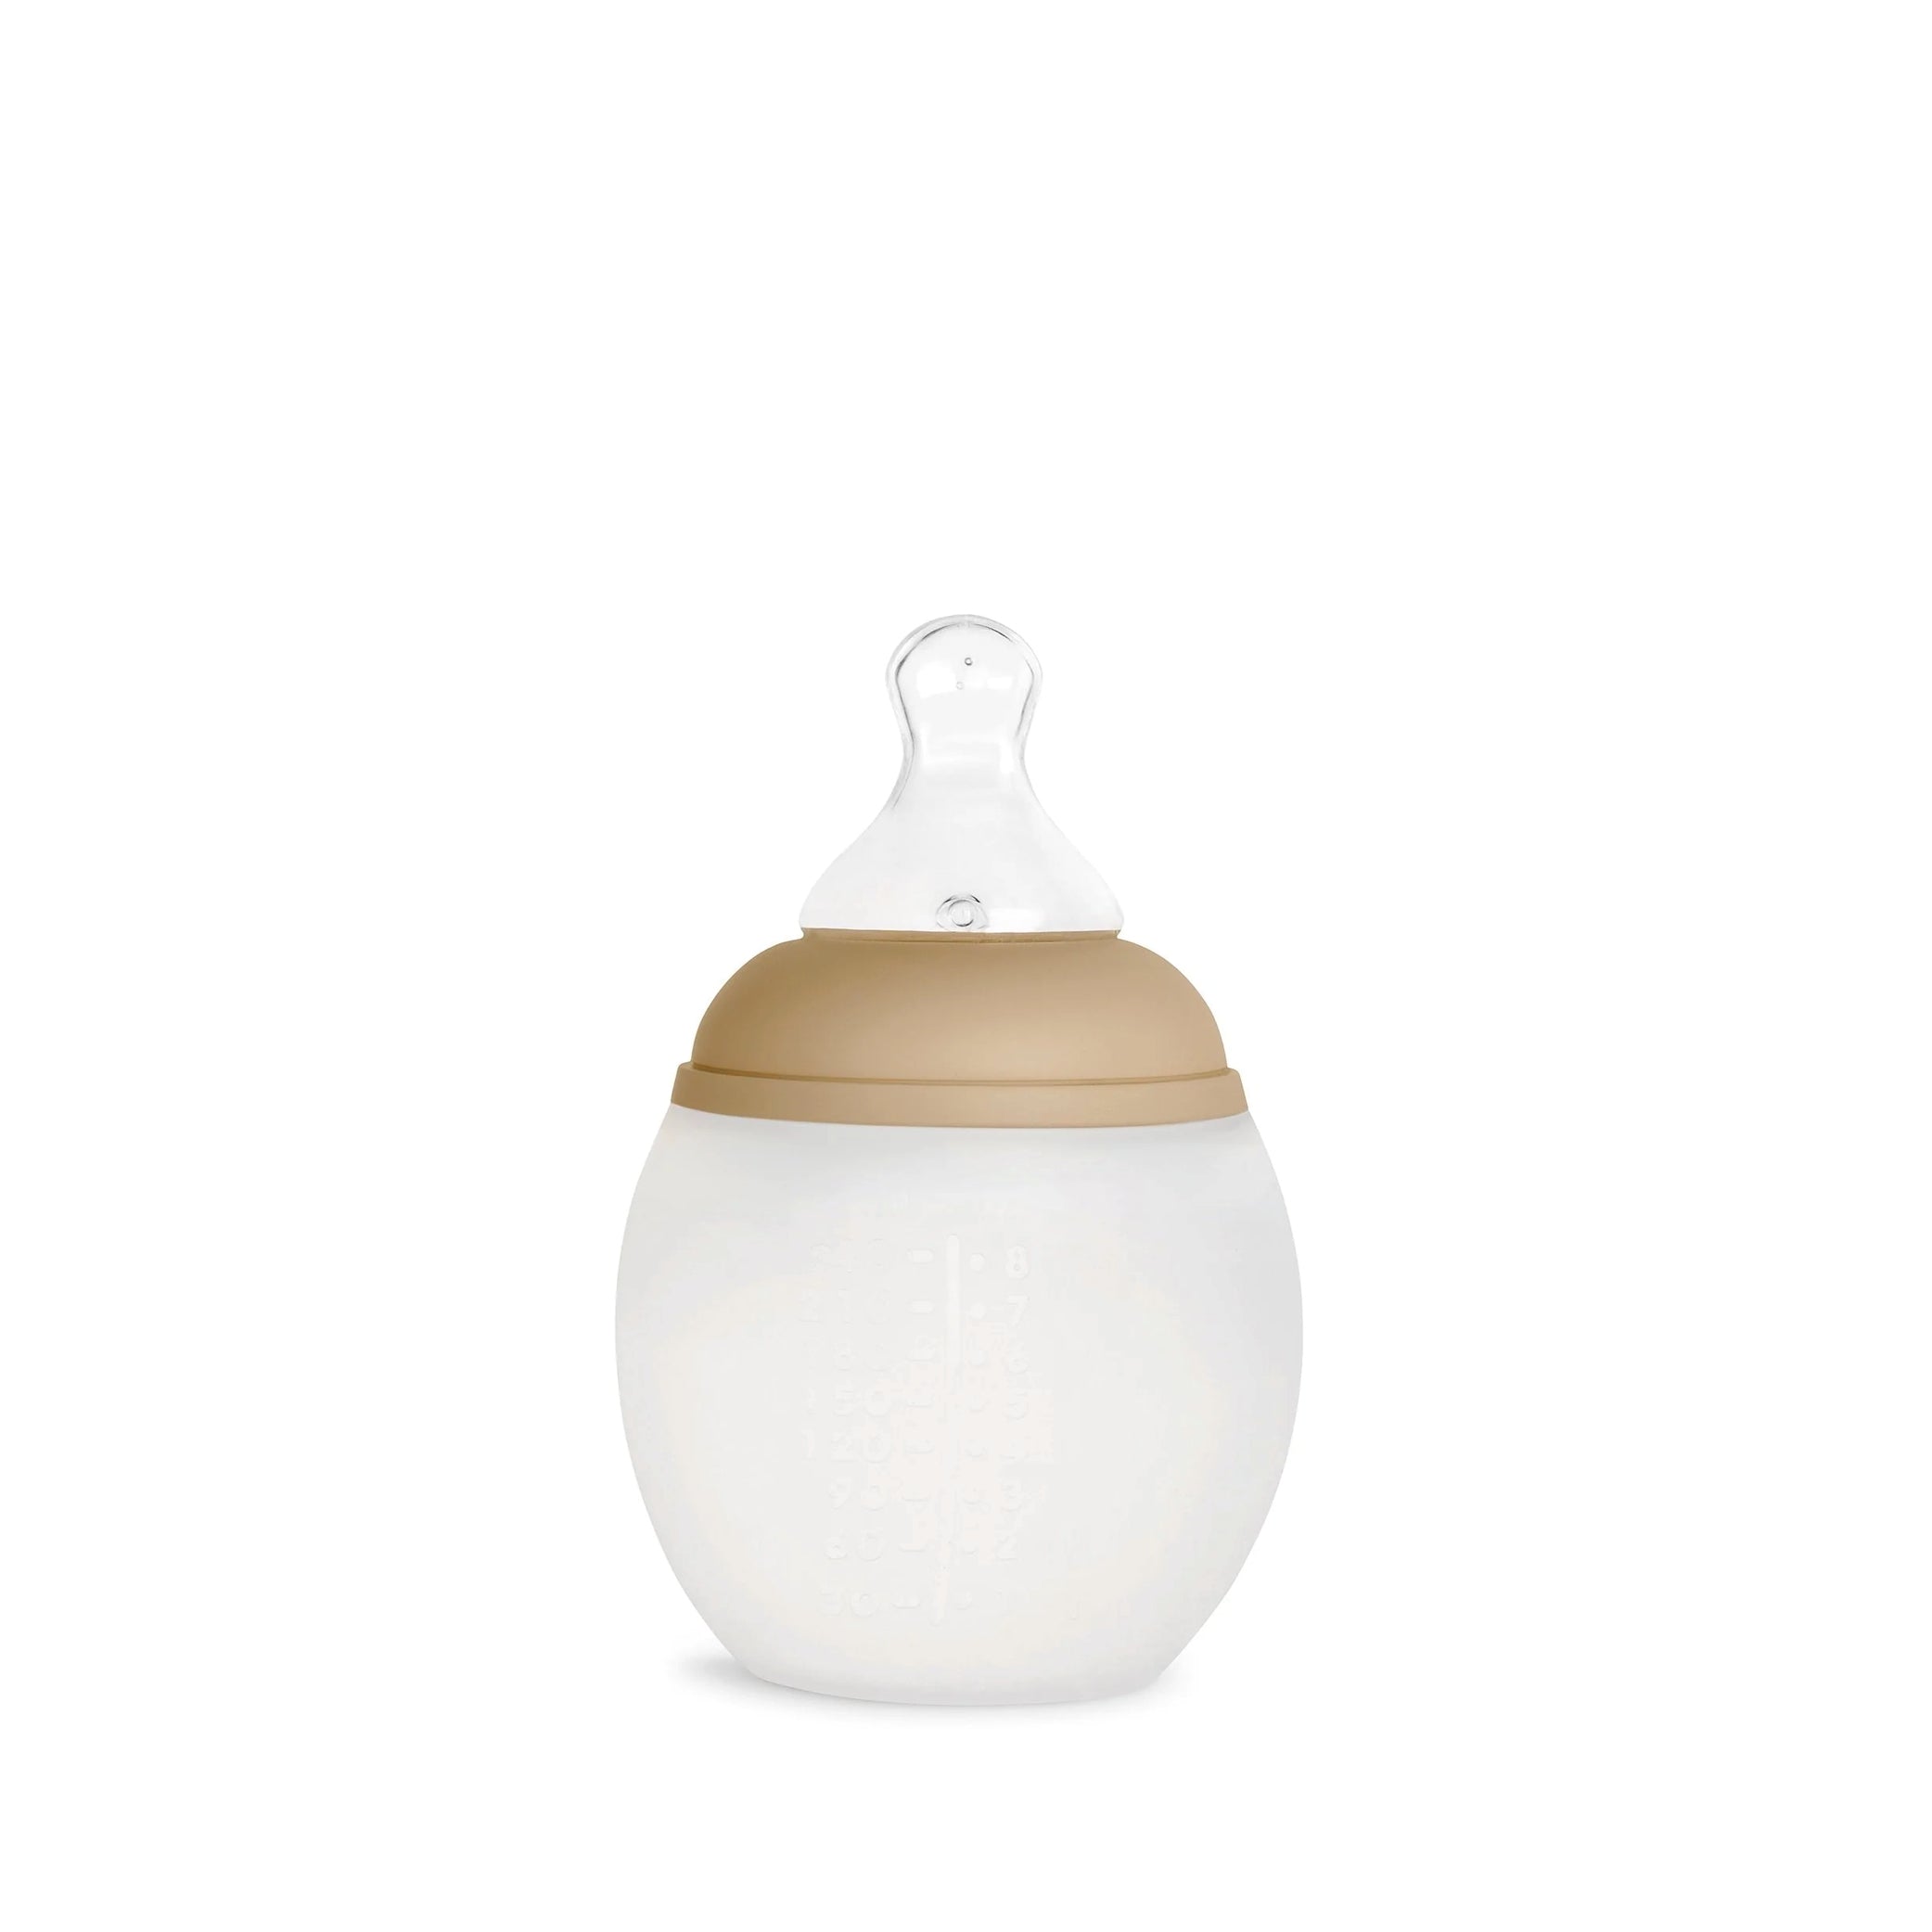 Baby und Neugeborene Antikolik Babyflasche in oats 240ml aus BPA frei medizinischem Silikon ohne Plastik von Elke bei kinder und konsorten düsseldorf